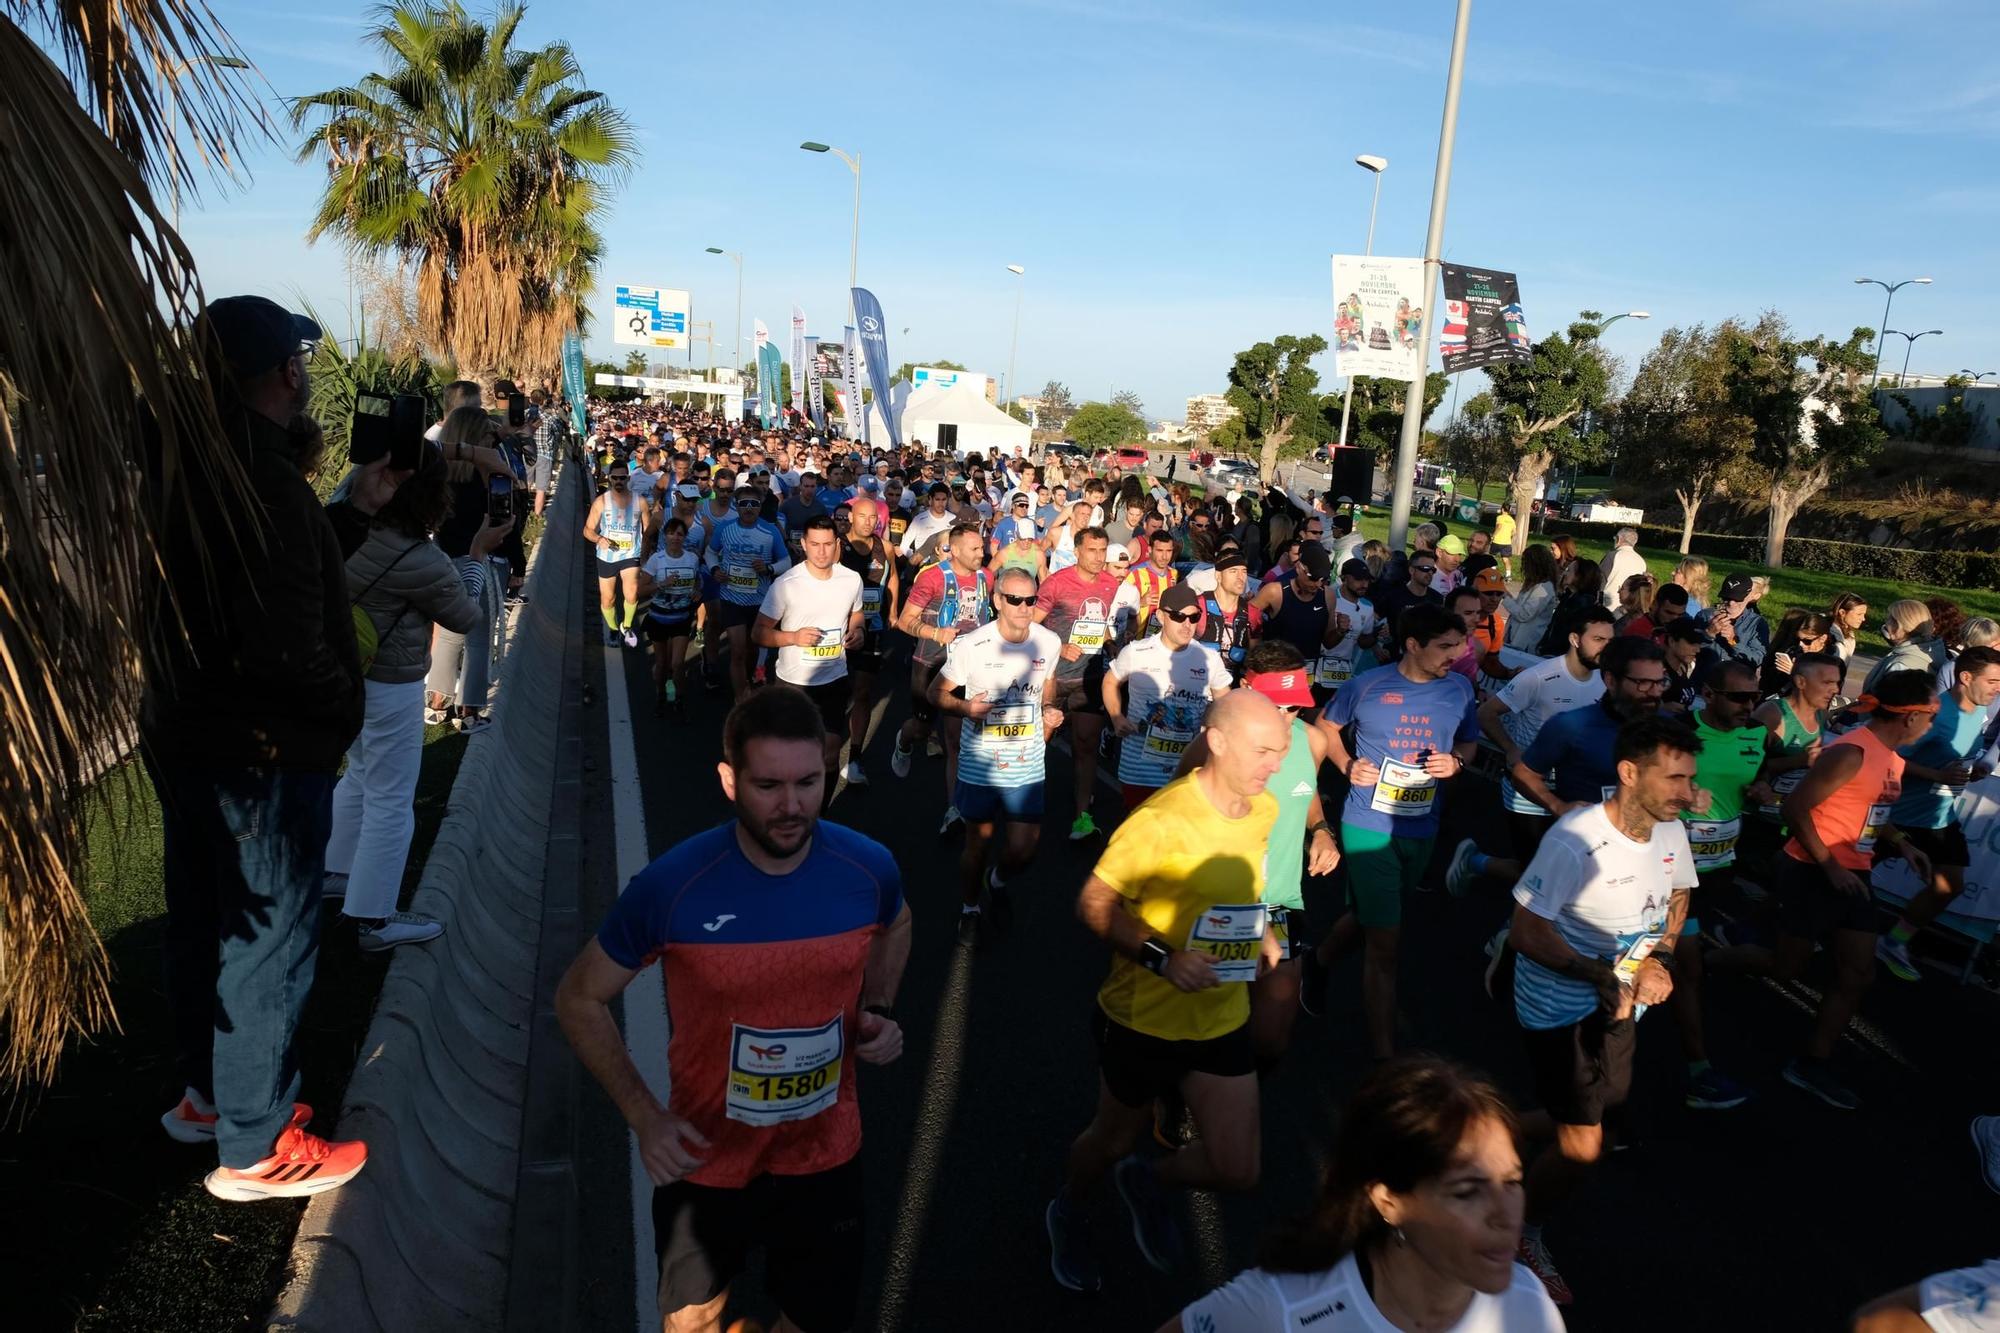 Búscate en la TotalEnergies Media Maratón de Málaga